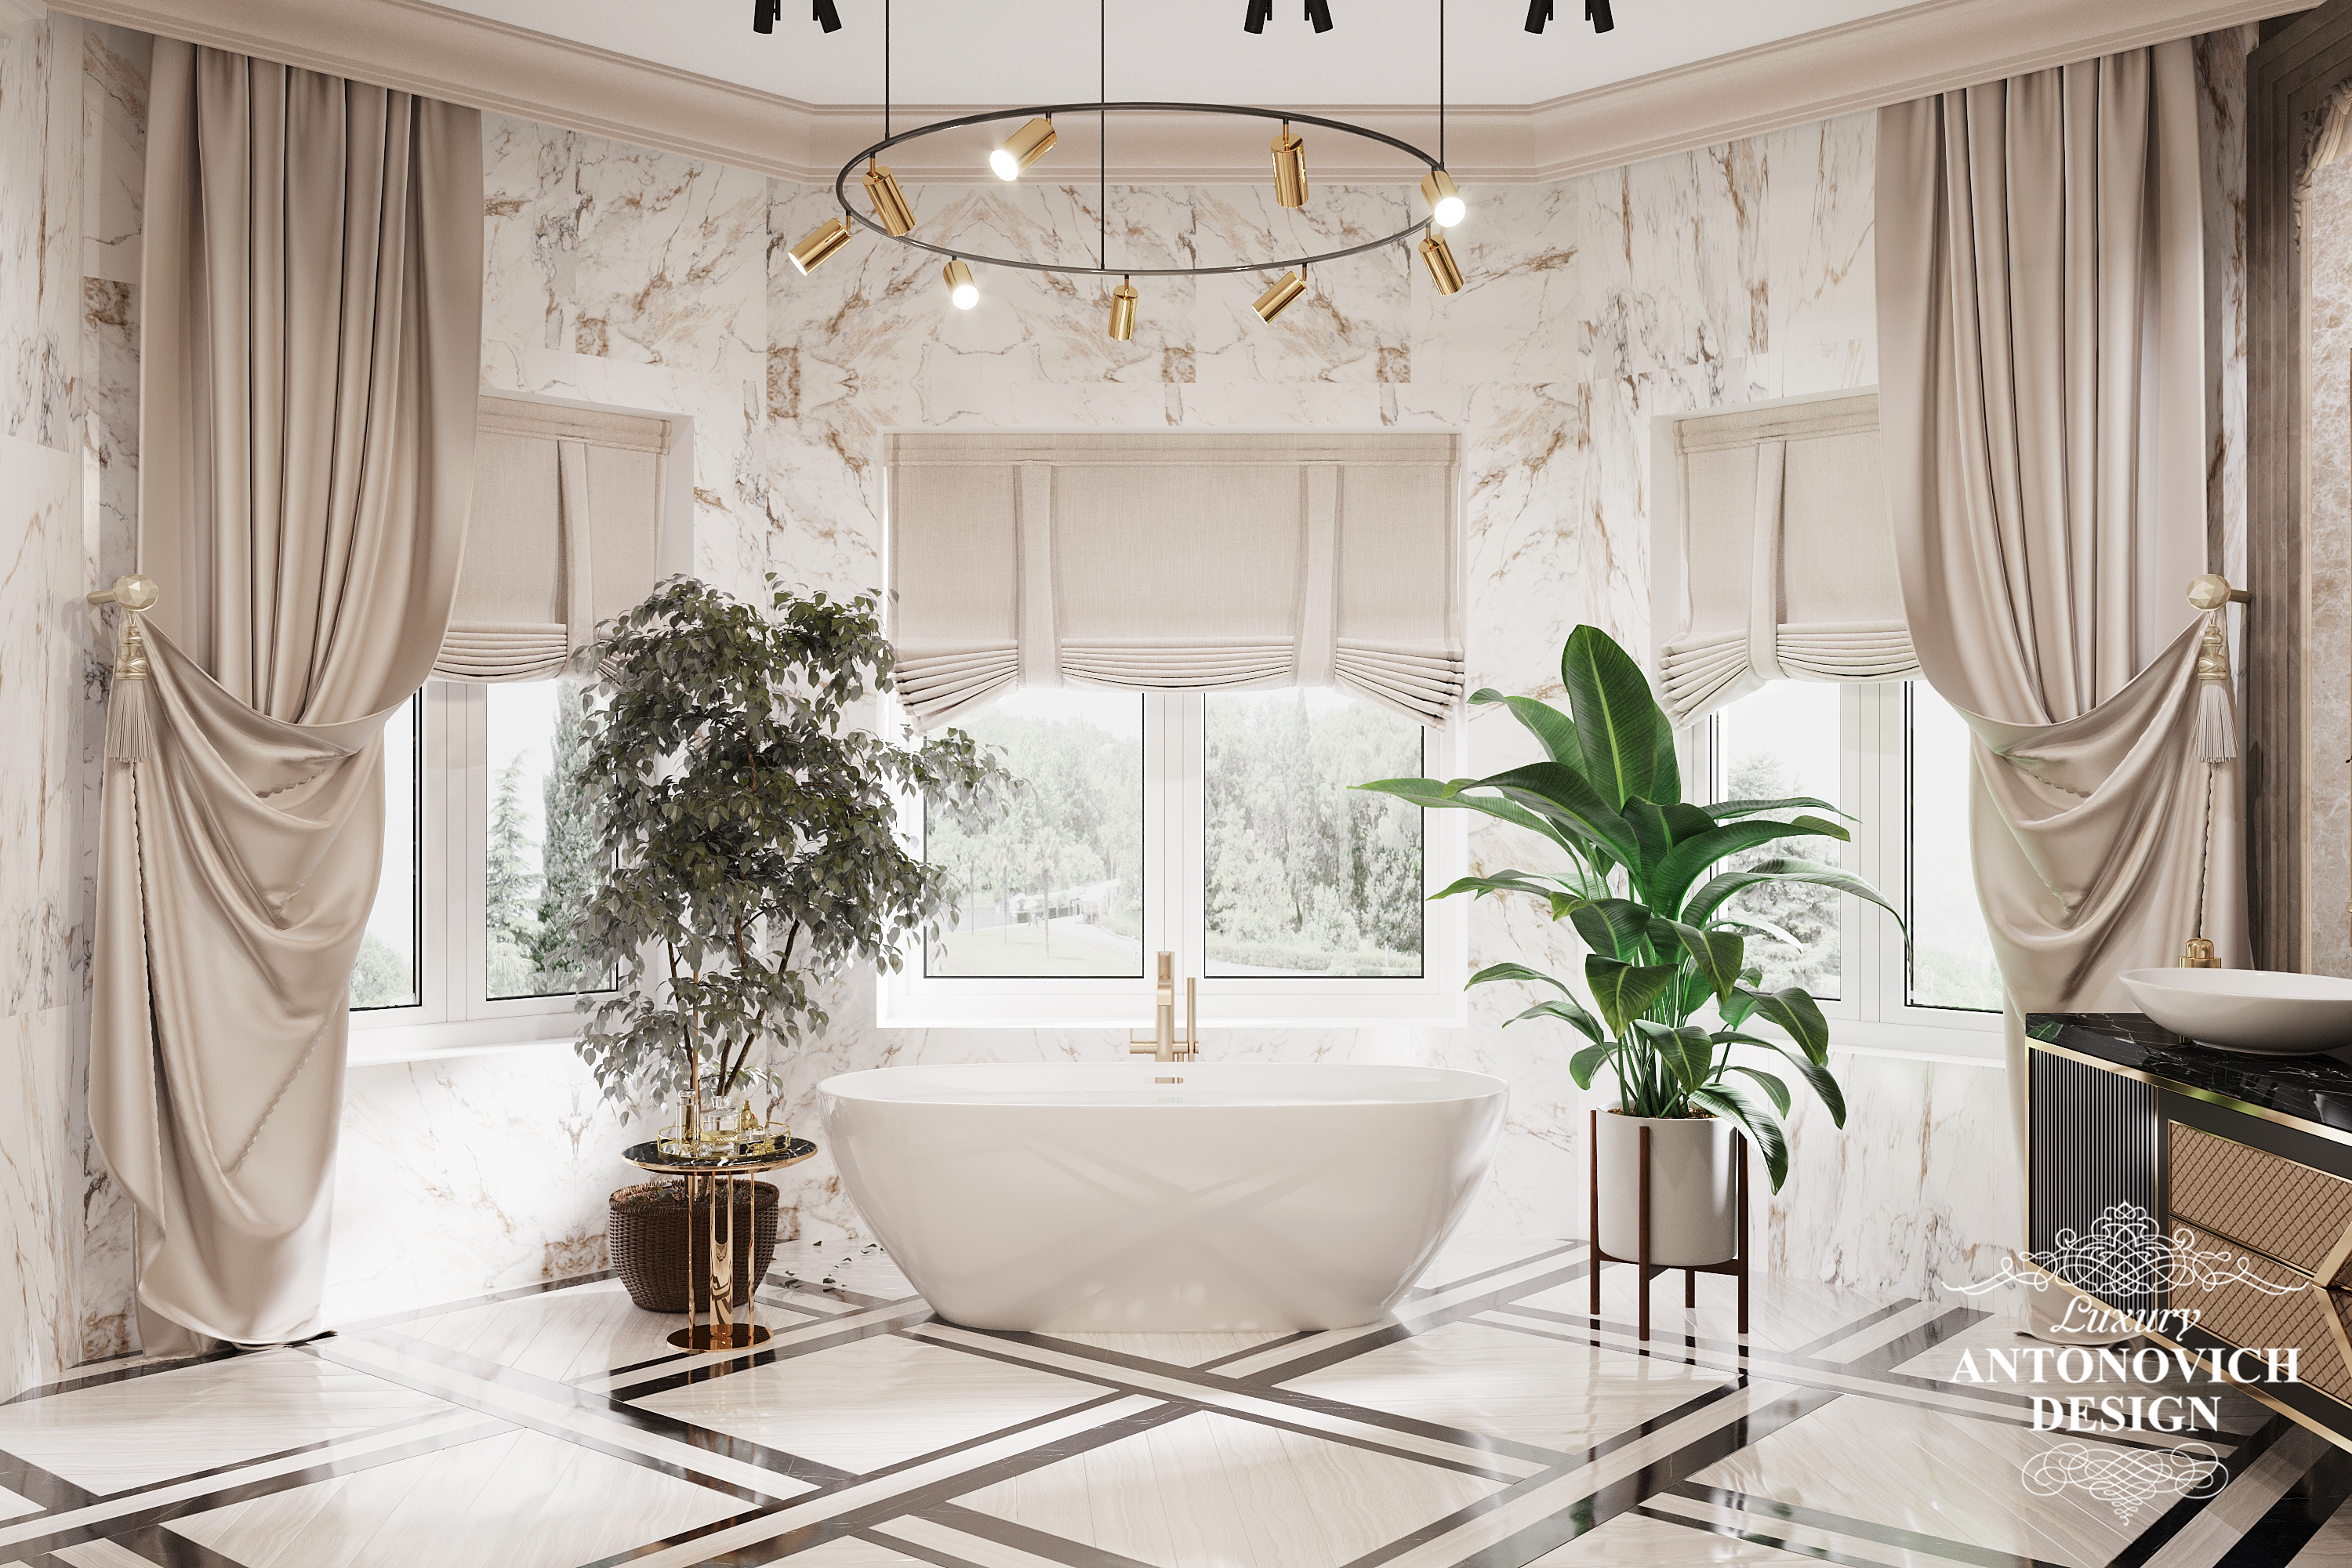 Элитная дорогая итальянская сантехника в дизайне санузла, ванной комнаты. Дизайн дома в сегменте класса премиум